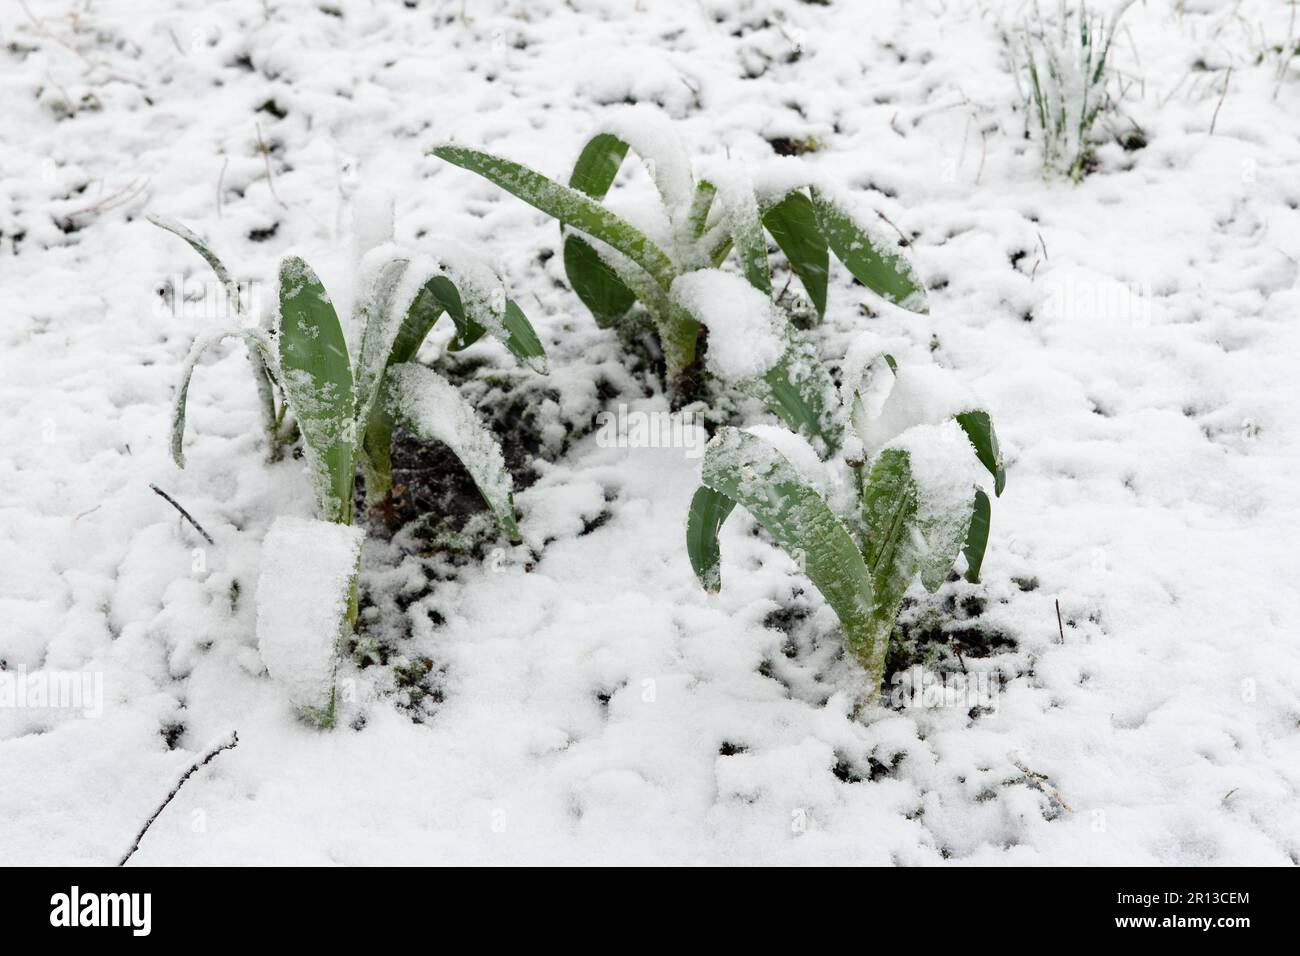 Pousses et feuilles d'ail de grande taille qui ont augmenté au printemps, couvertes de neige en raison du mauvais temps et d'une forte pression froide en avril Banque D'Images